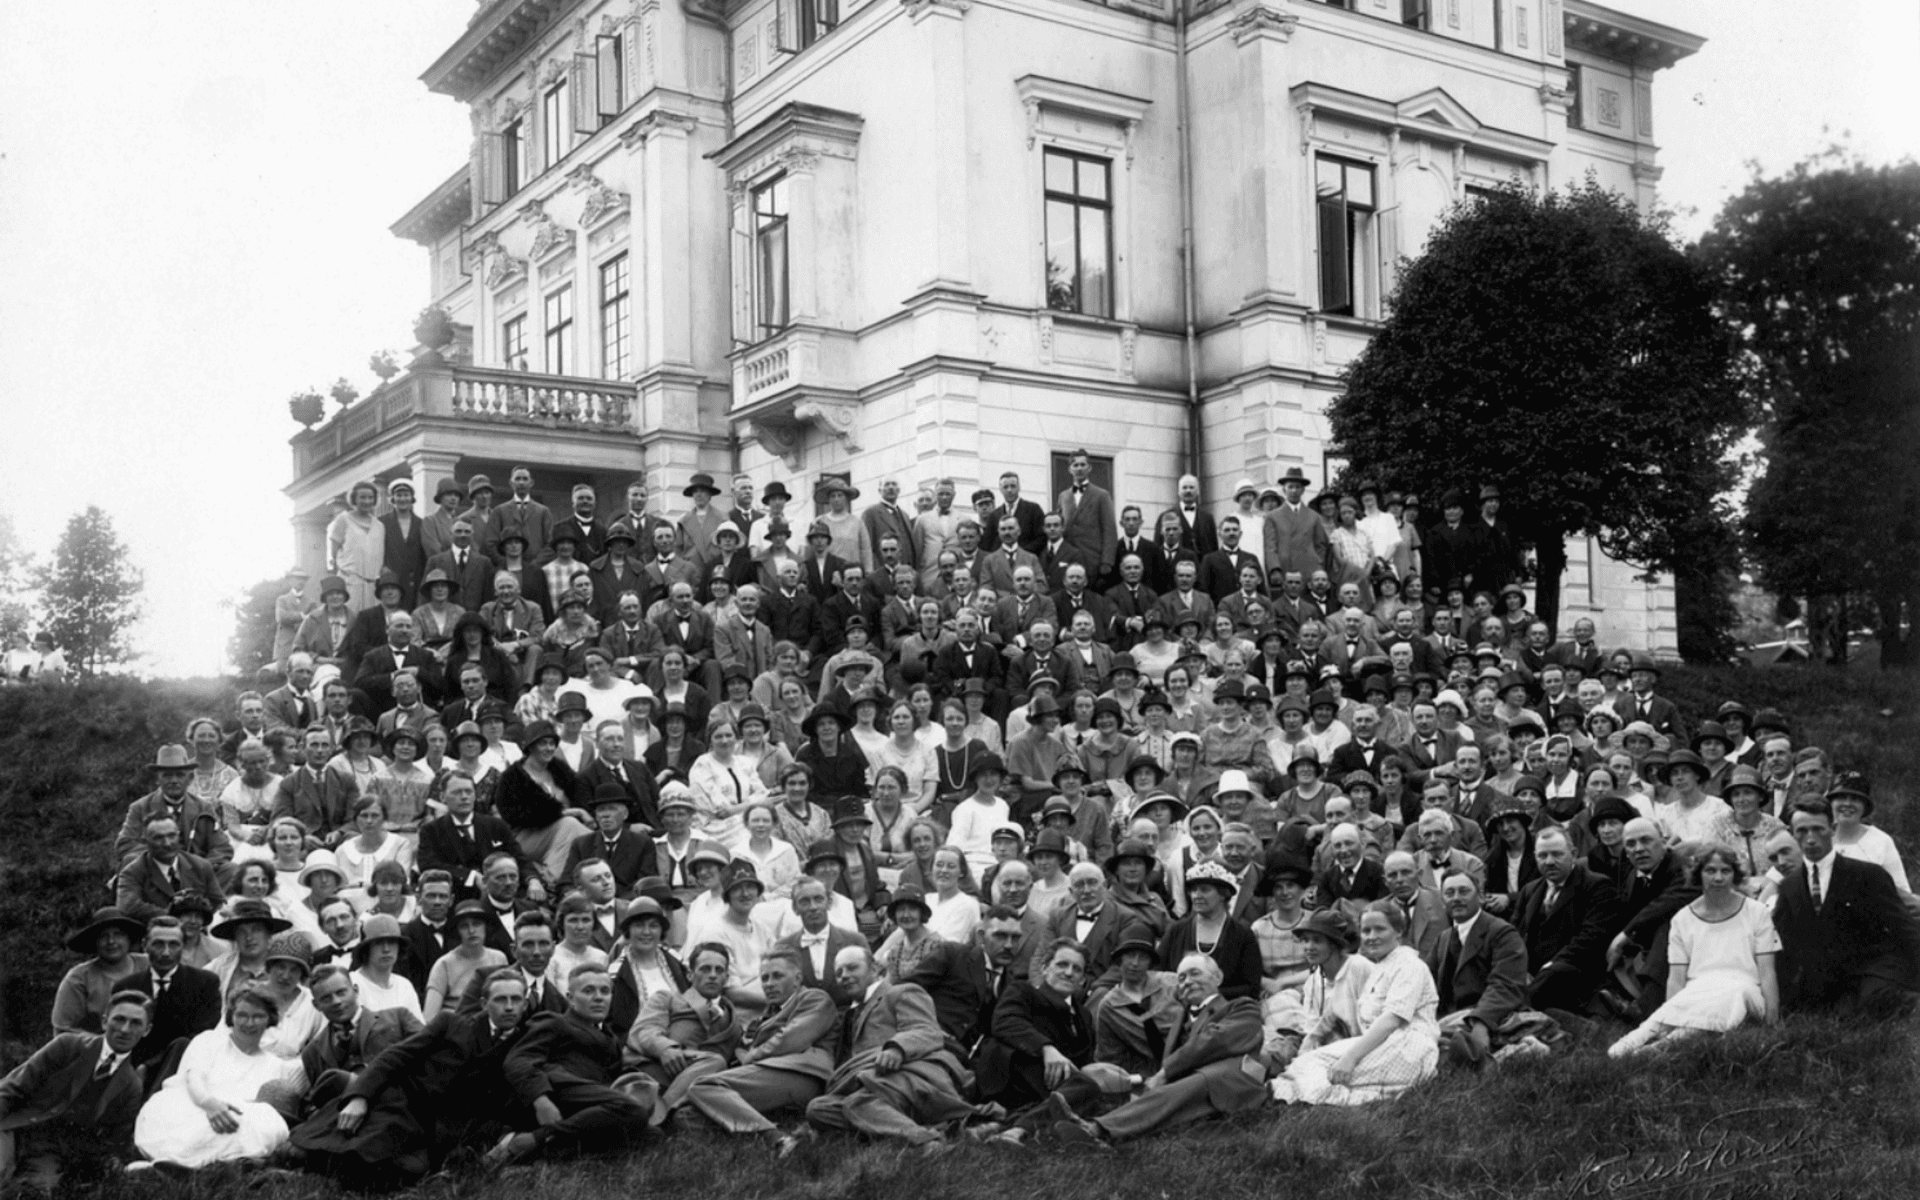 Okänd grupp fotograferade framför Nolhaga slott, 1930-talet. Fotografering - 1930-1939. 